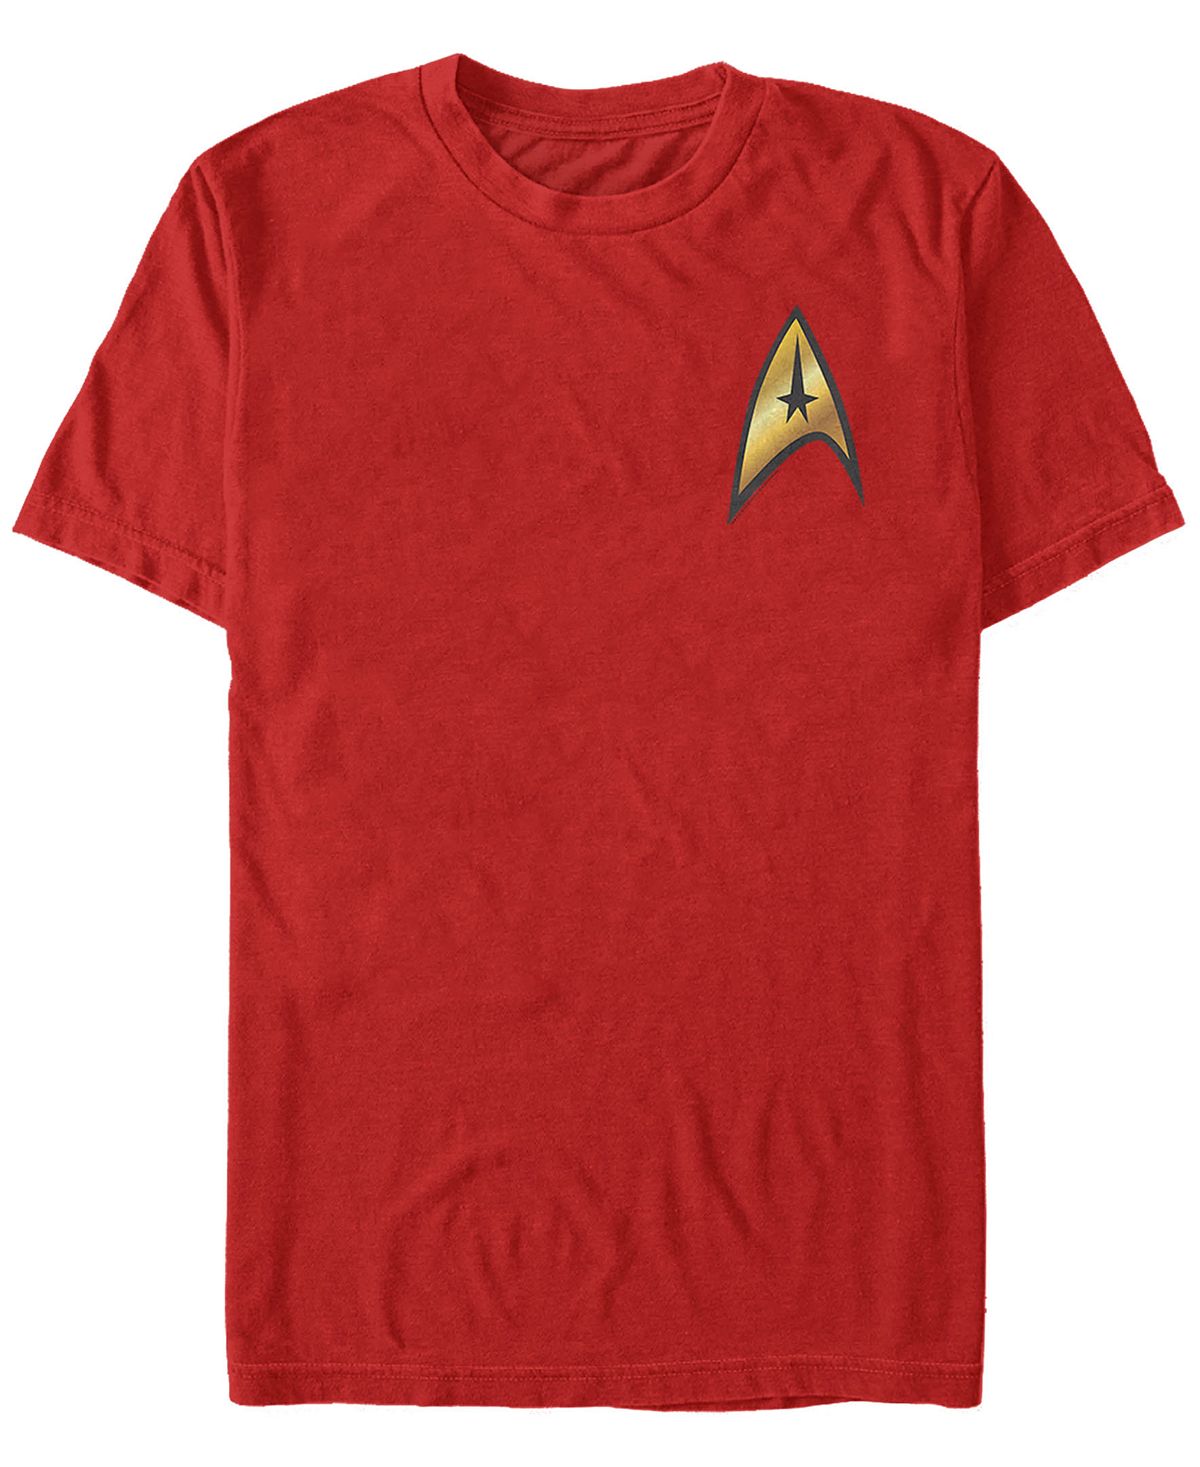 Мужской костюм с командным значком star trek, оригинальная серия, футболка с коротким рукавом Fifth Sun, красный